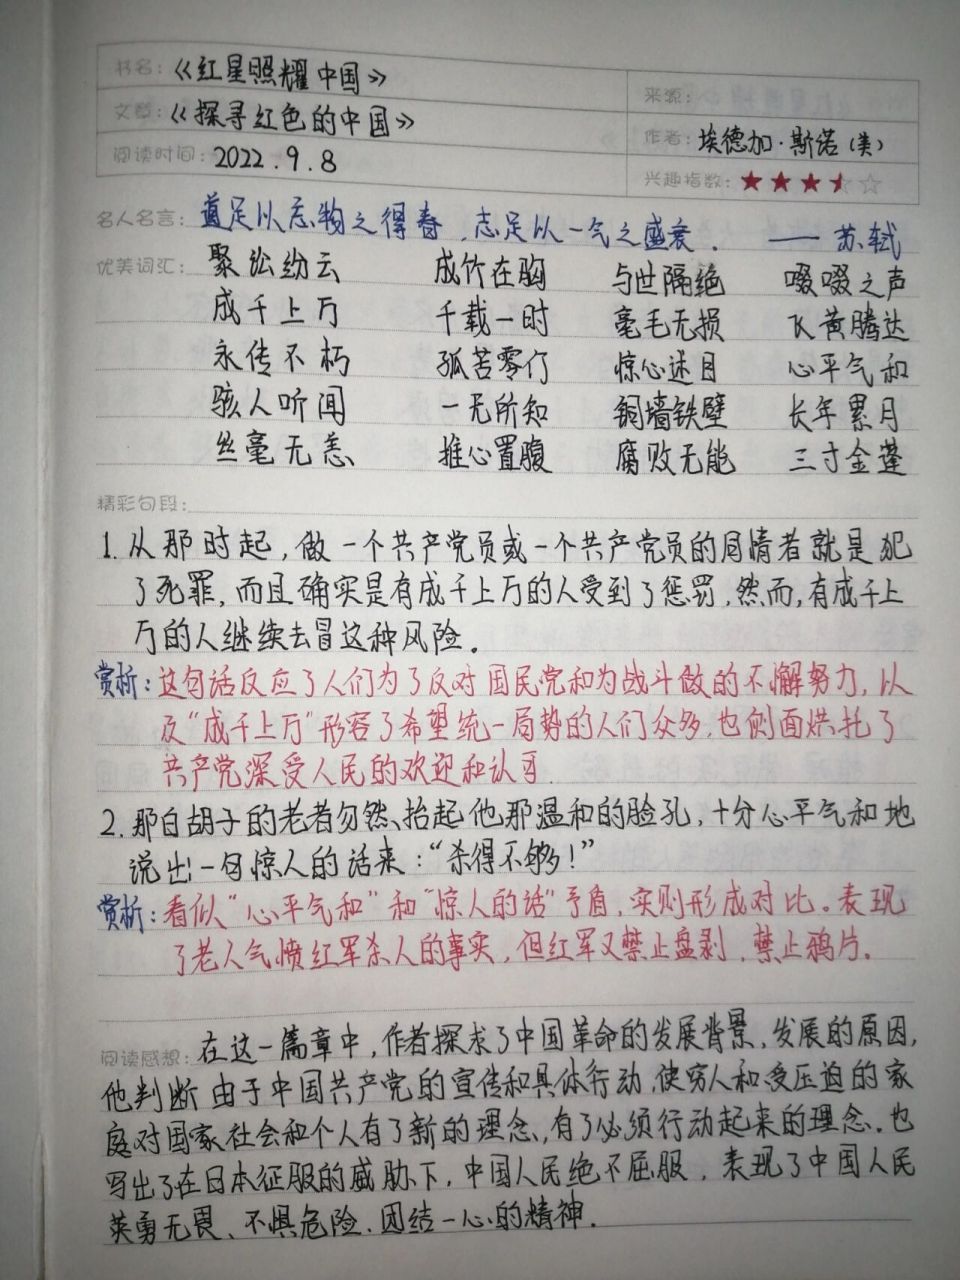 《红星照耀中国》读书笔记1～6章 是的,因为这个作者比较懒,所以打算